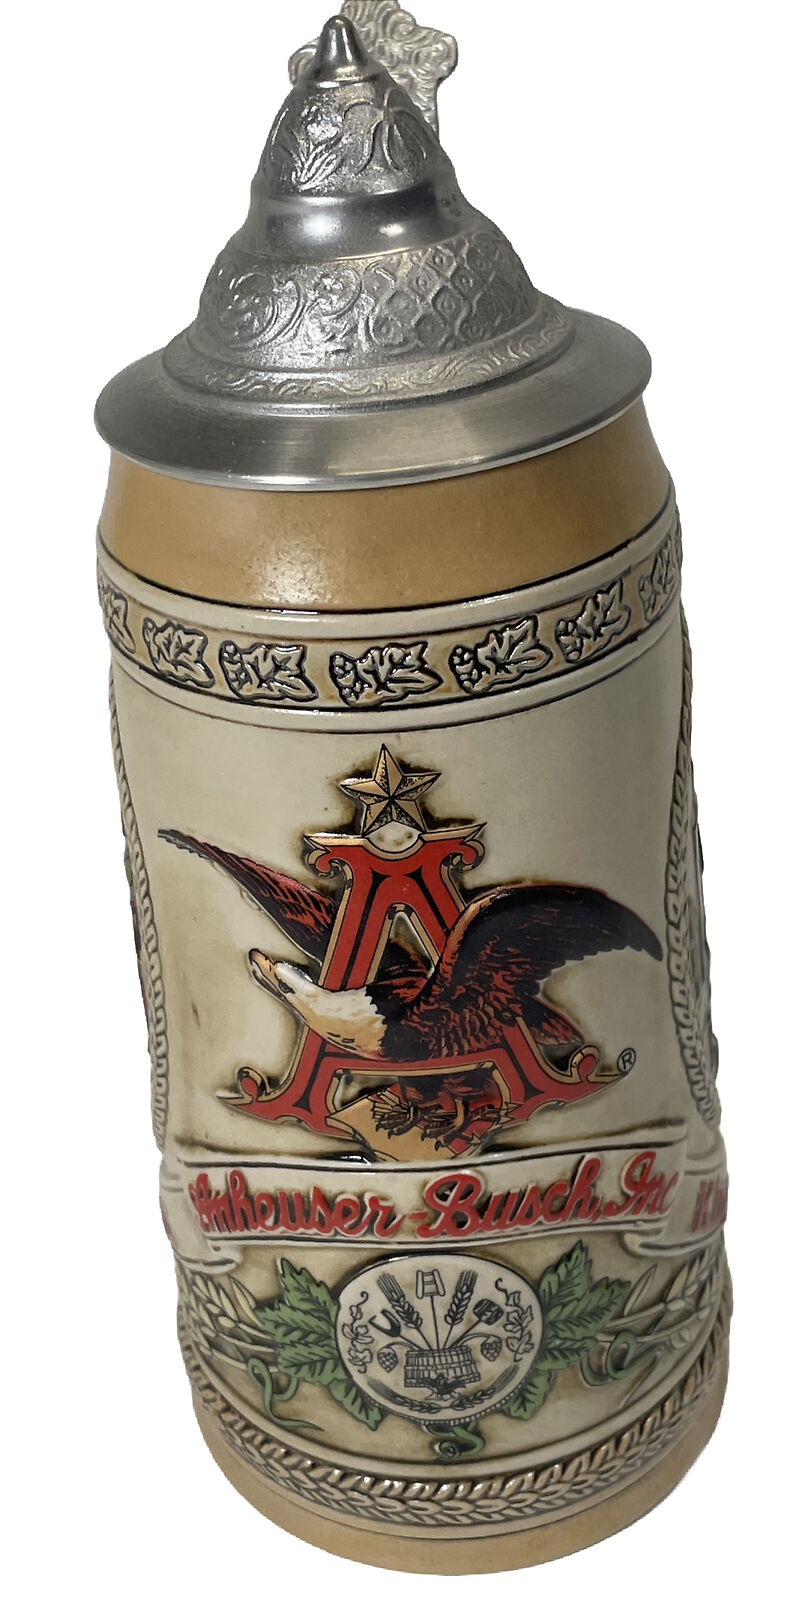 Anheuser-Busch M Series Limited Edition Ceramarte Budweiser Beer Stein EXCELLENT